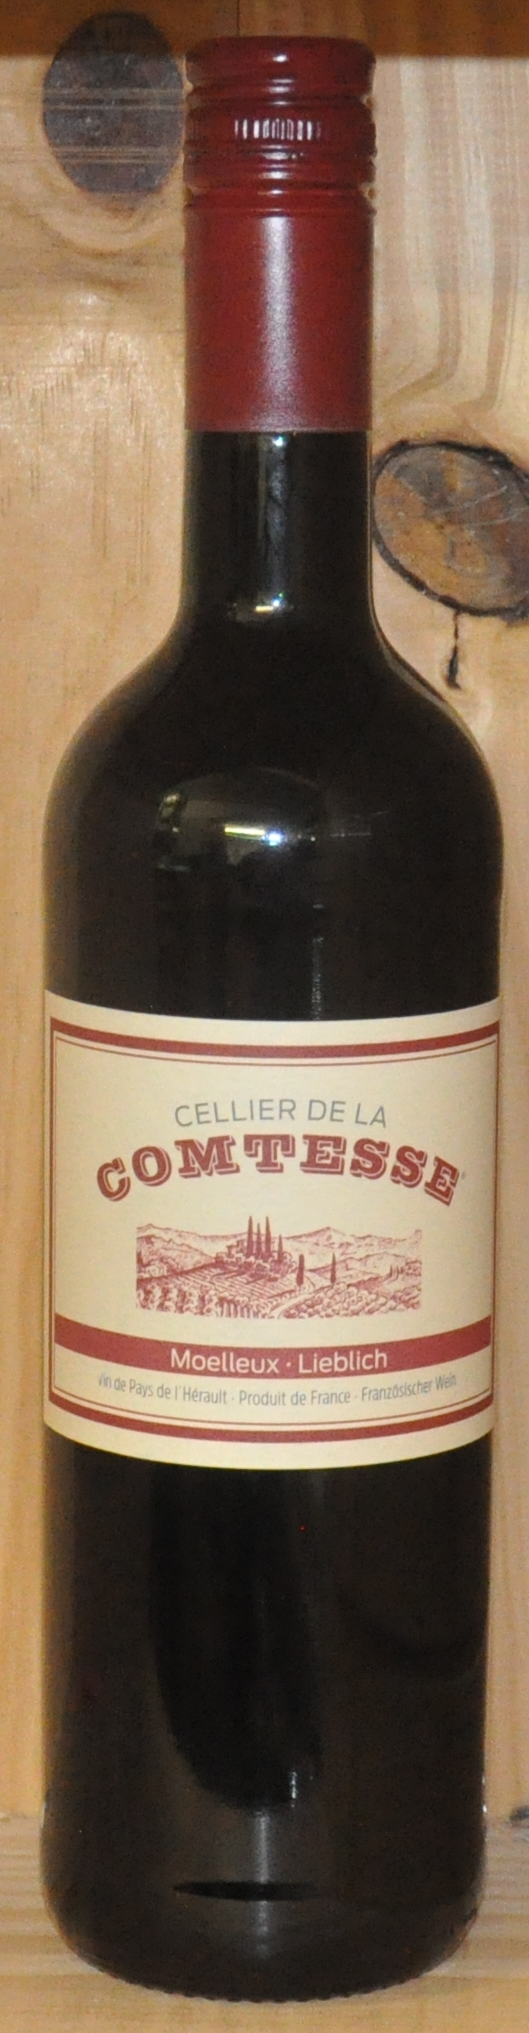 Cellier de la Comtessé - V.d.P - 2016 - Red Wines - South West (Soft F